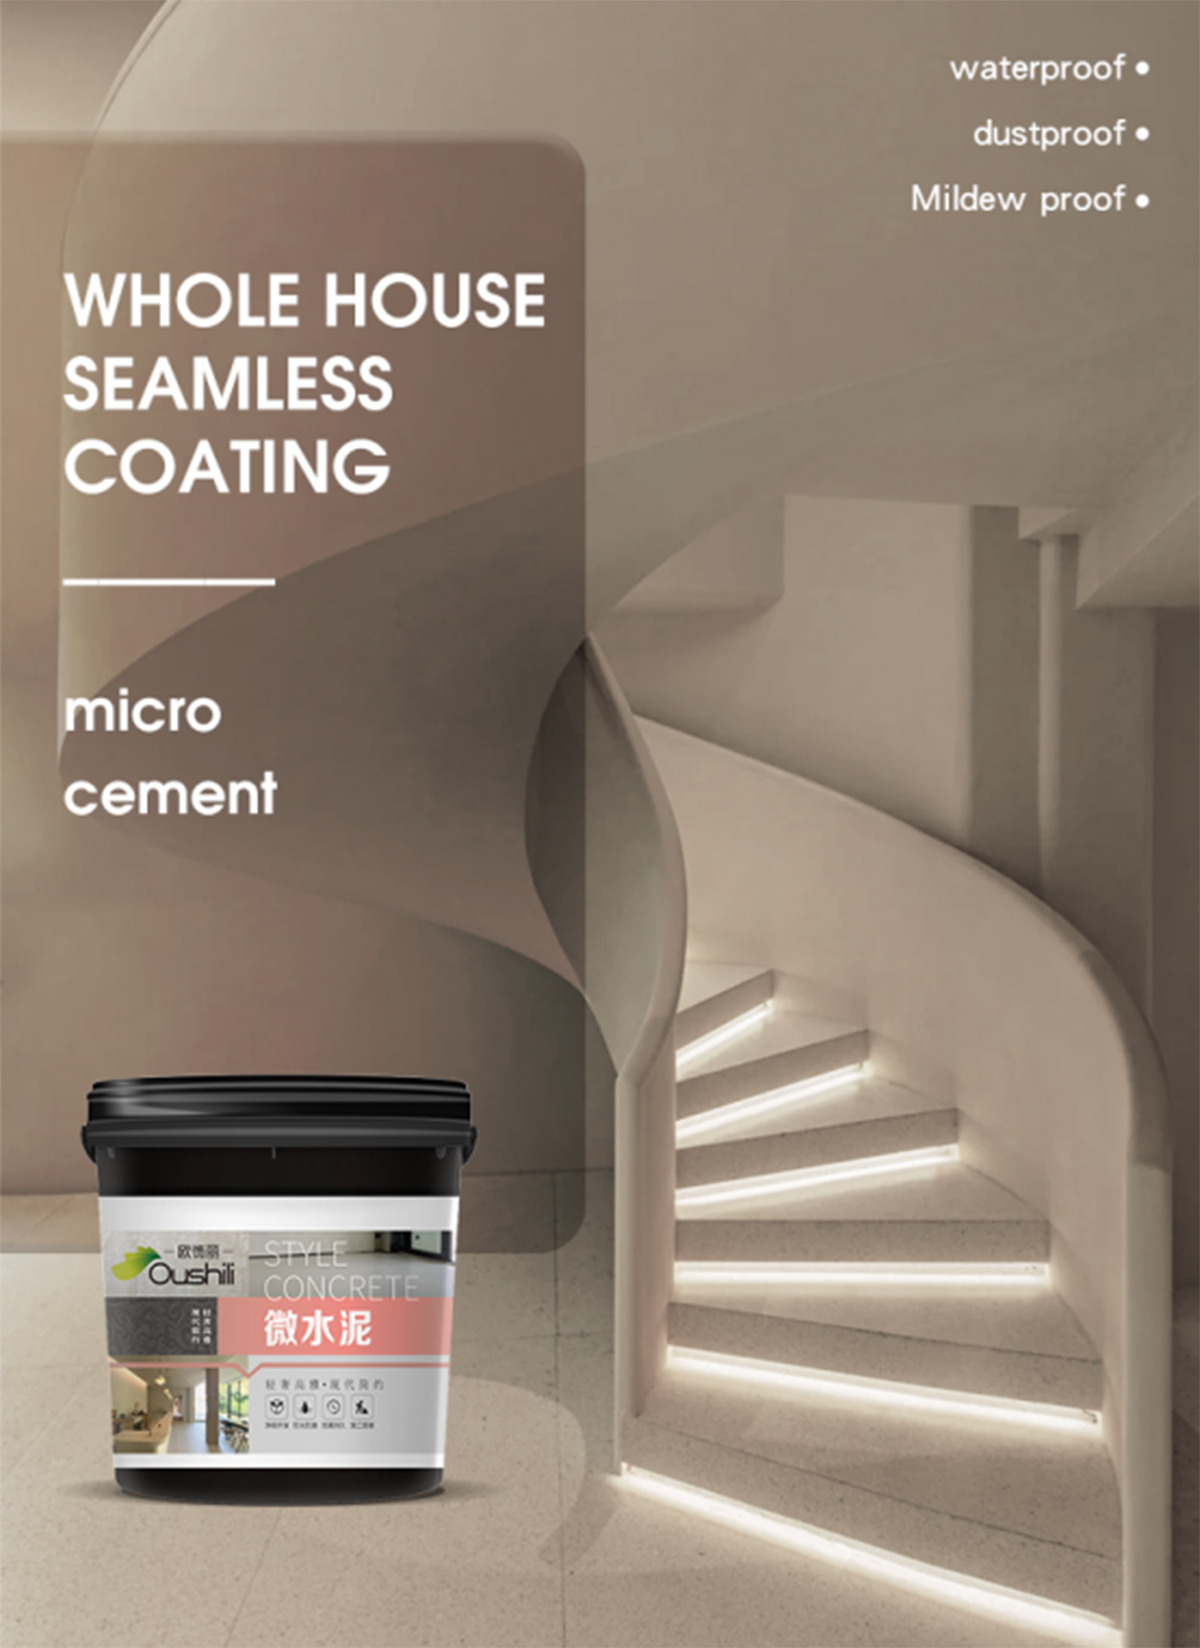 Xinruili-microcement-waterproofing-tiasa-diterapkeun-ka-dinding-atawa-lantai-4